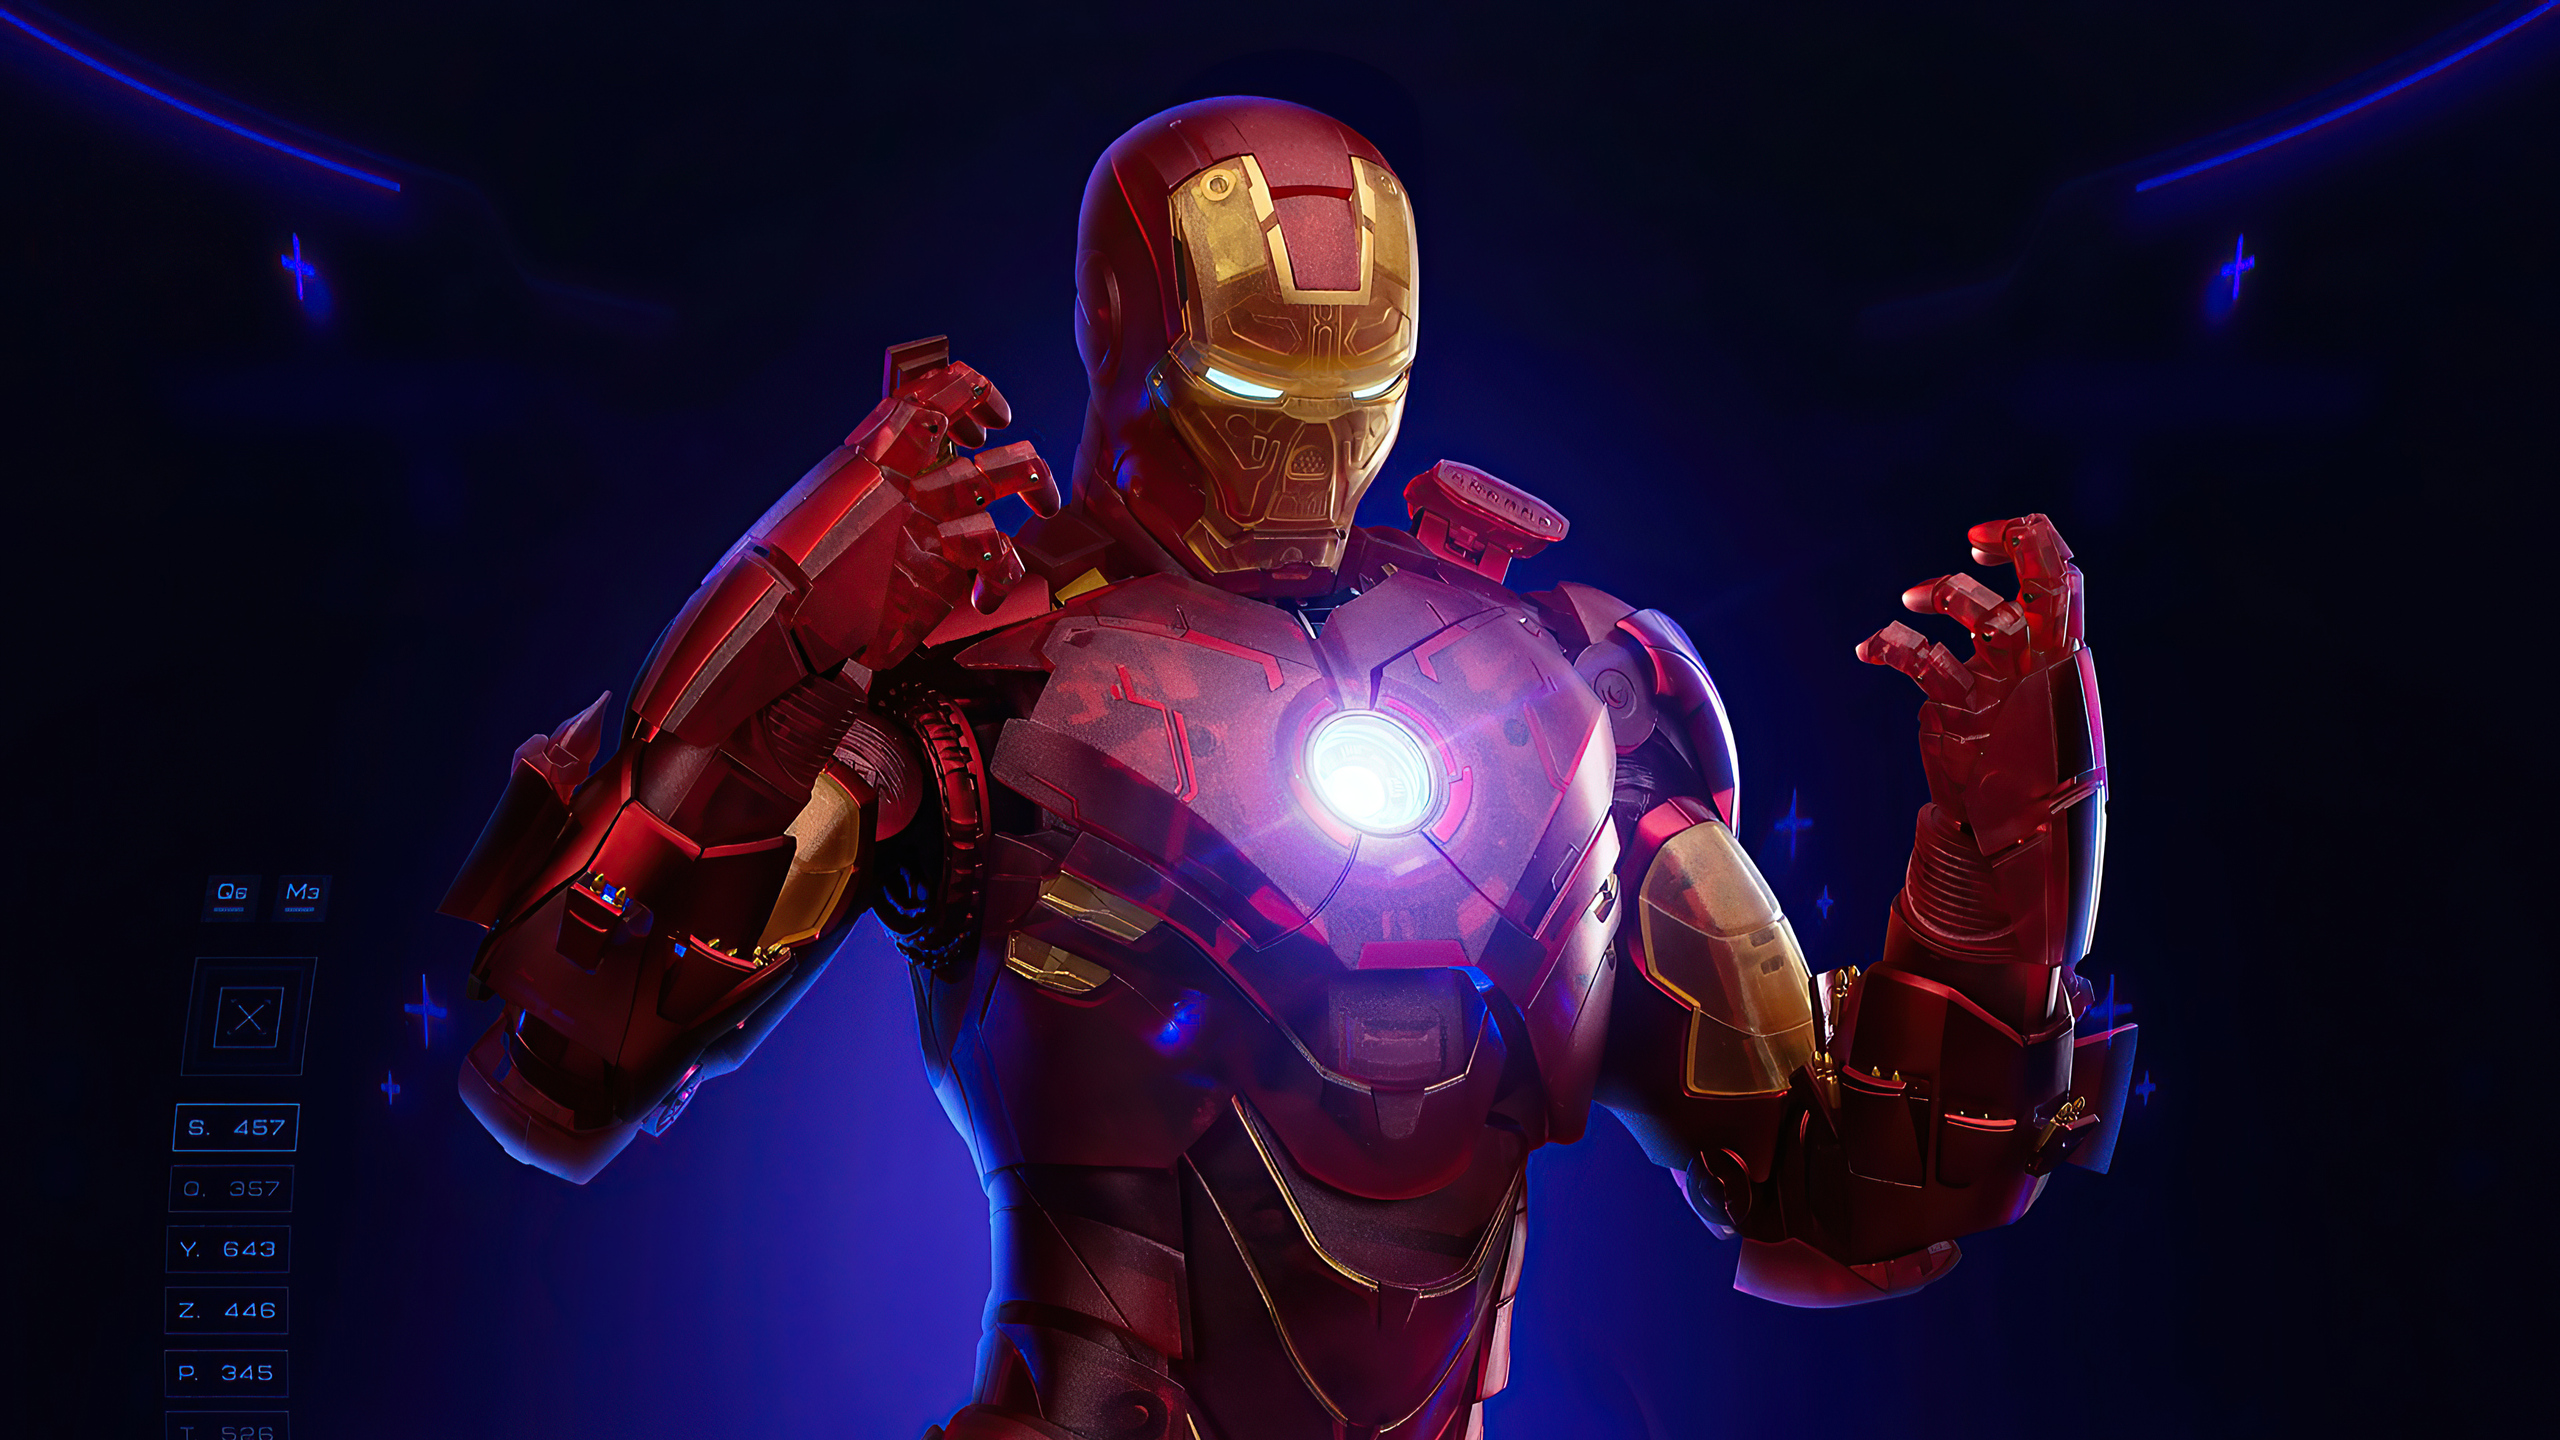 Iron Man Fan Art Digital Art Marvel Comics 2560x1440